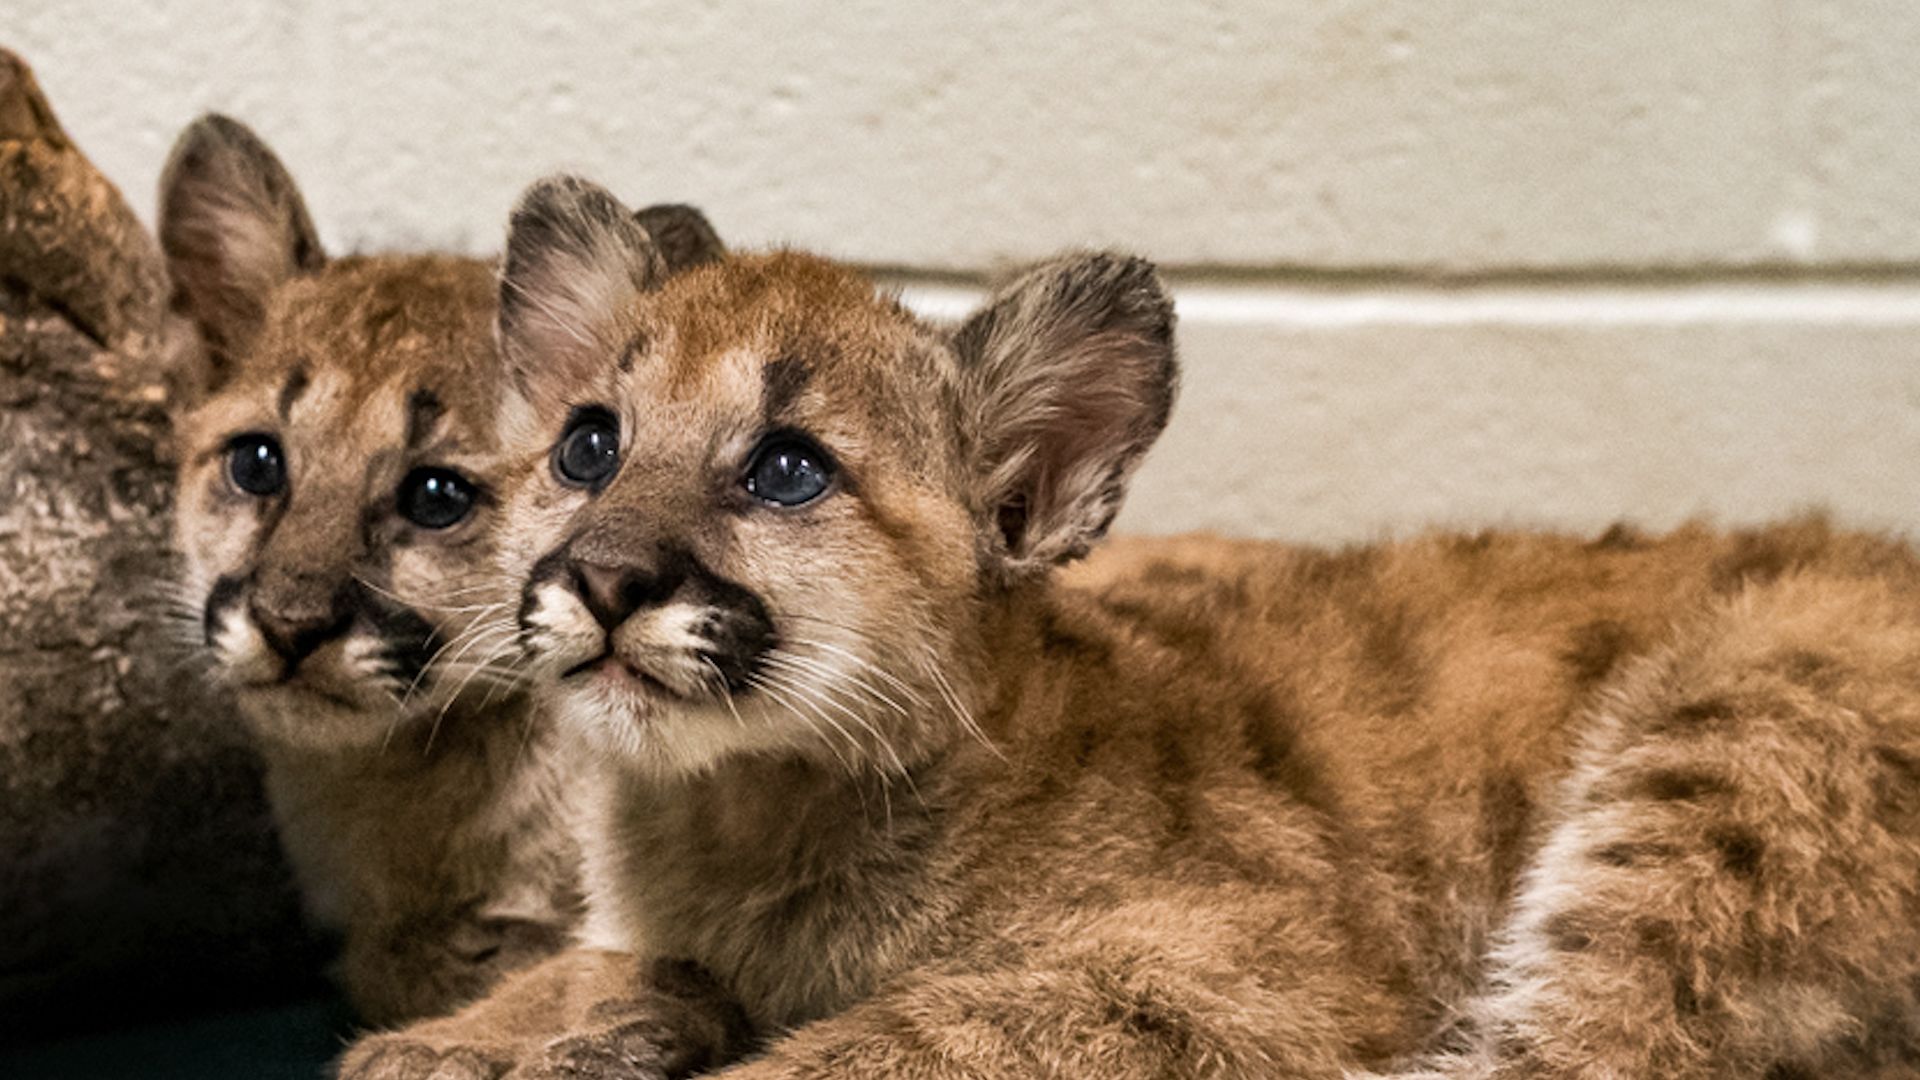 Cougar cubs